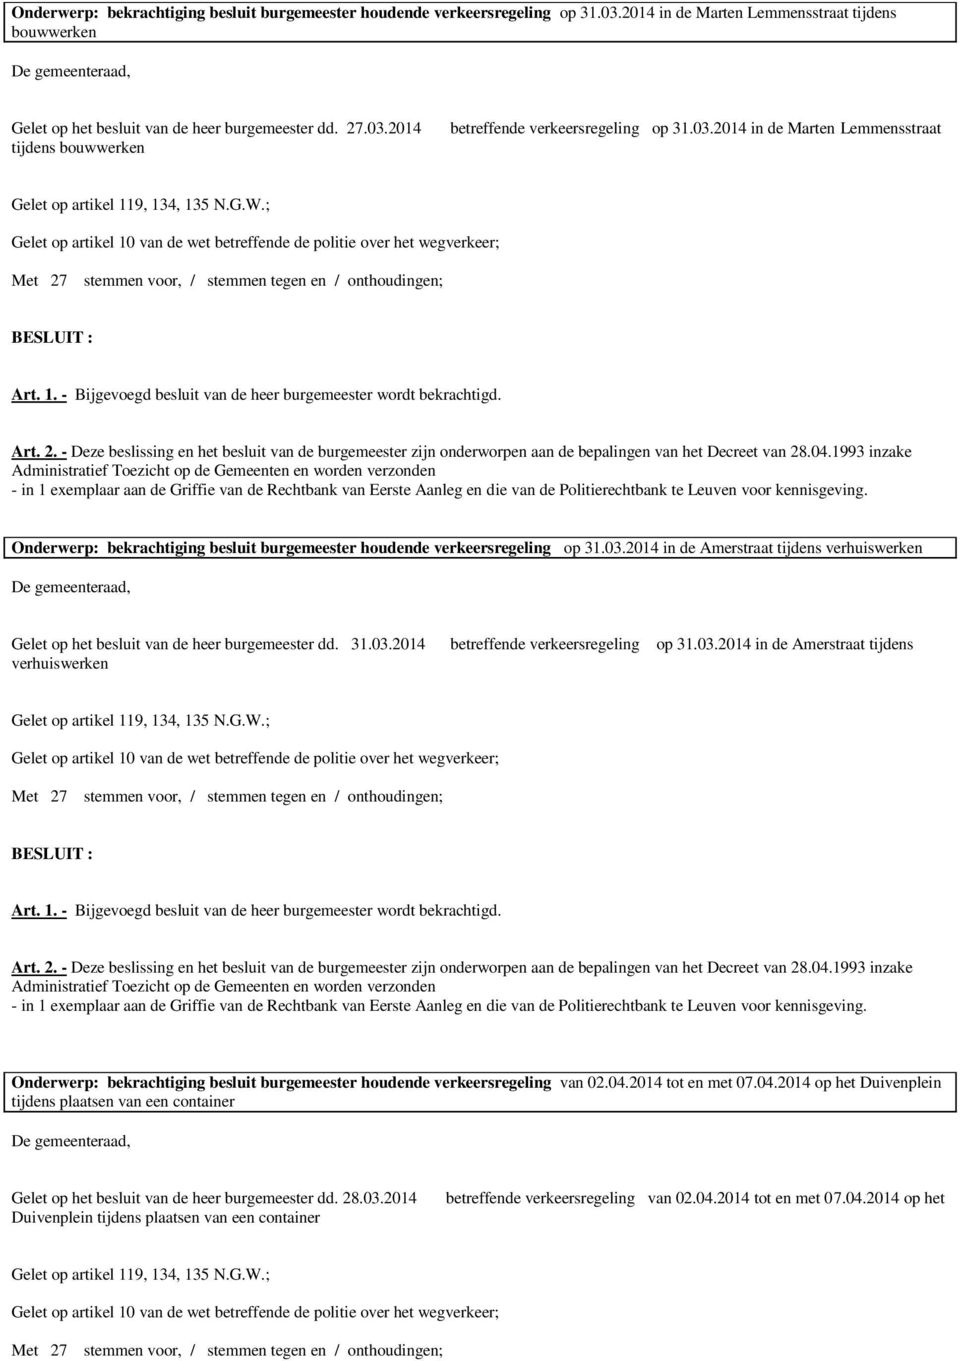 31.03.2014 betreffende verkeersregeling op 31.03.2014 in de Amerstraat tijdens verhuiswerken Onderwerp: bekrachtiging besluit burgemeester houdende verkeersregeling van 02.04.